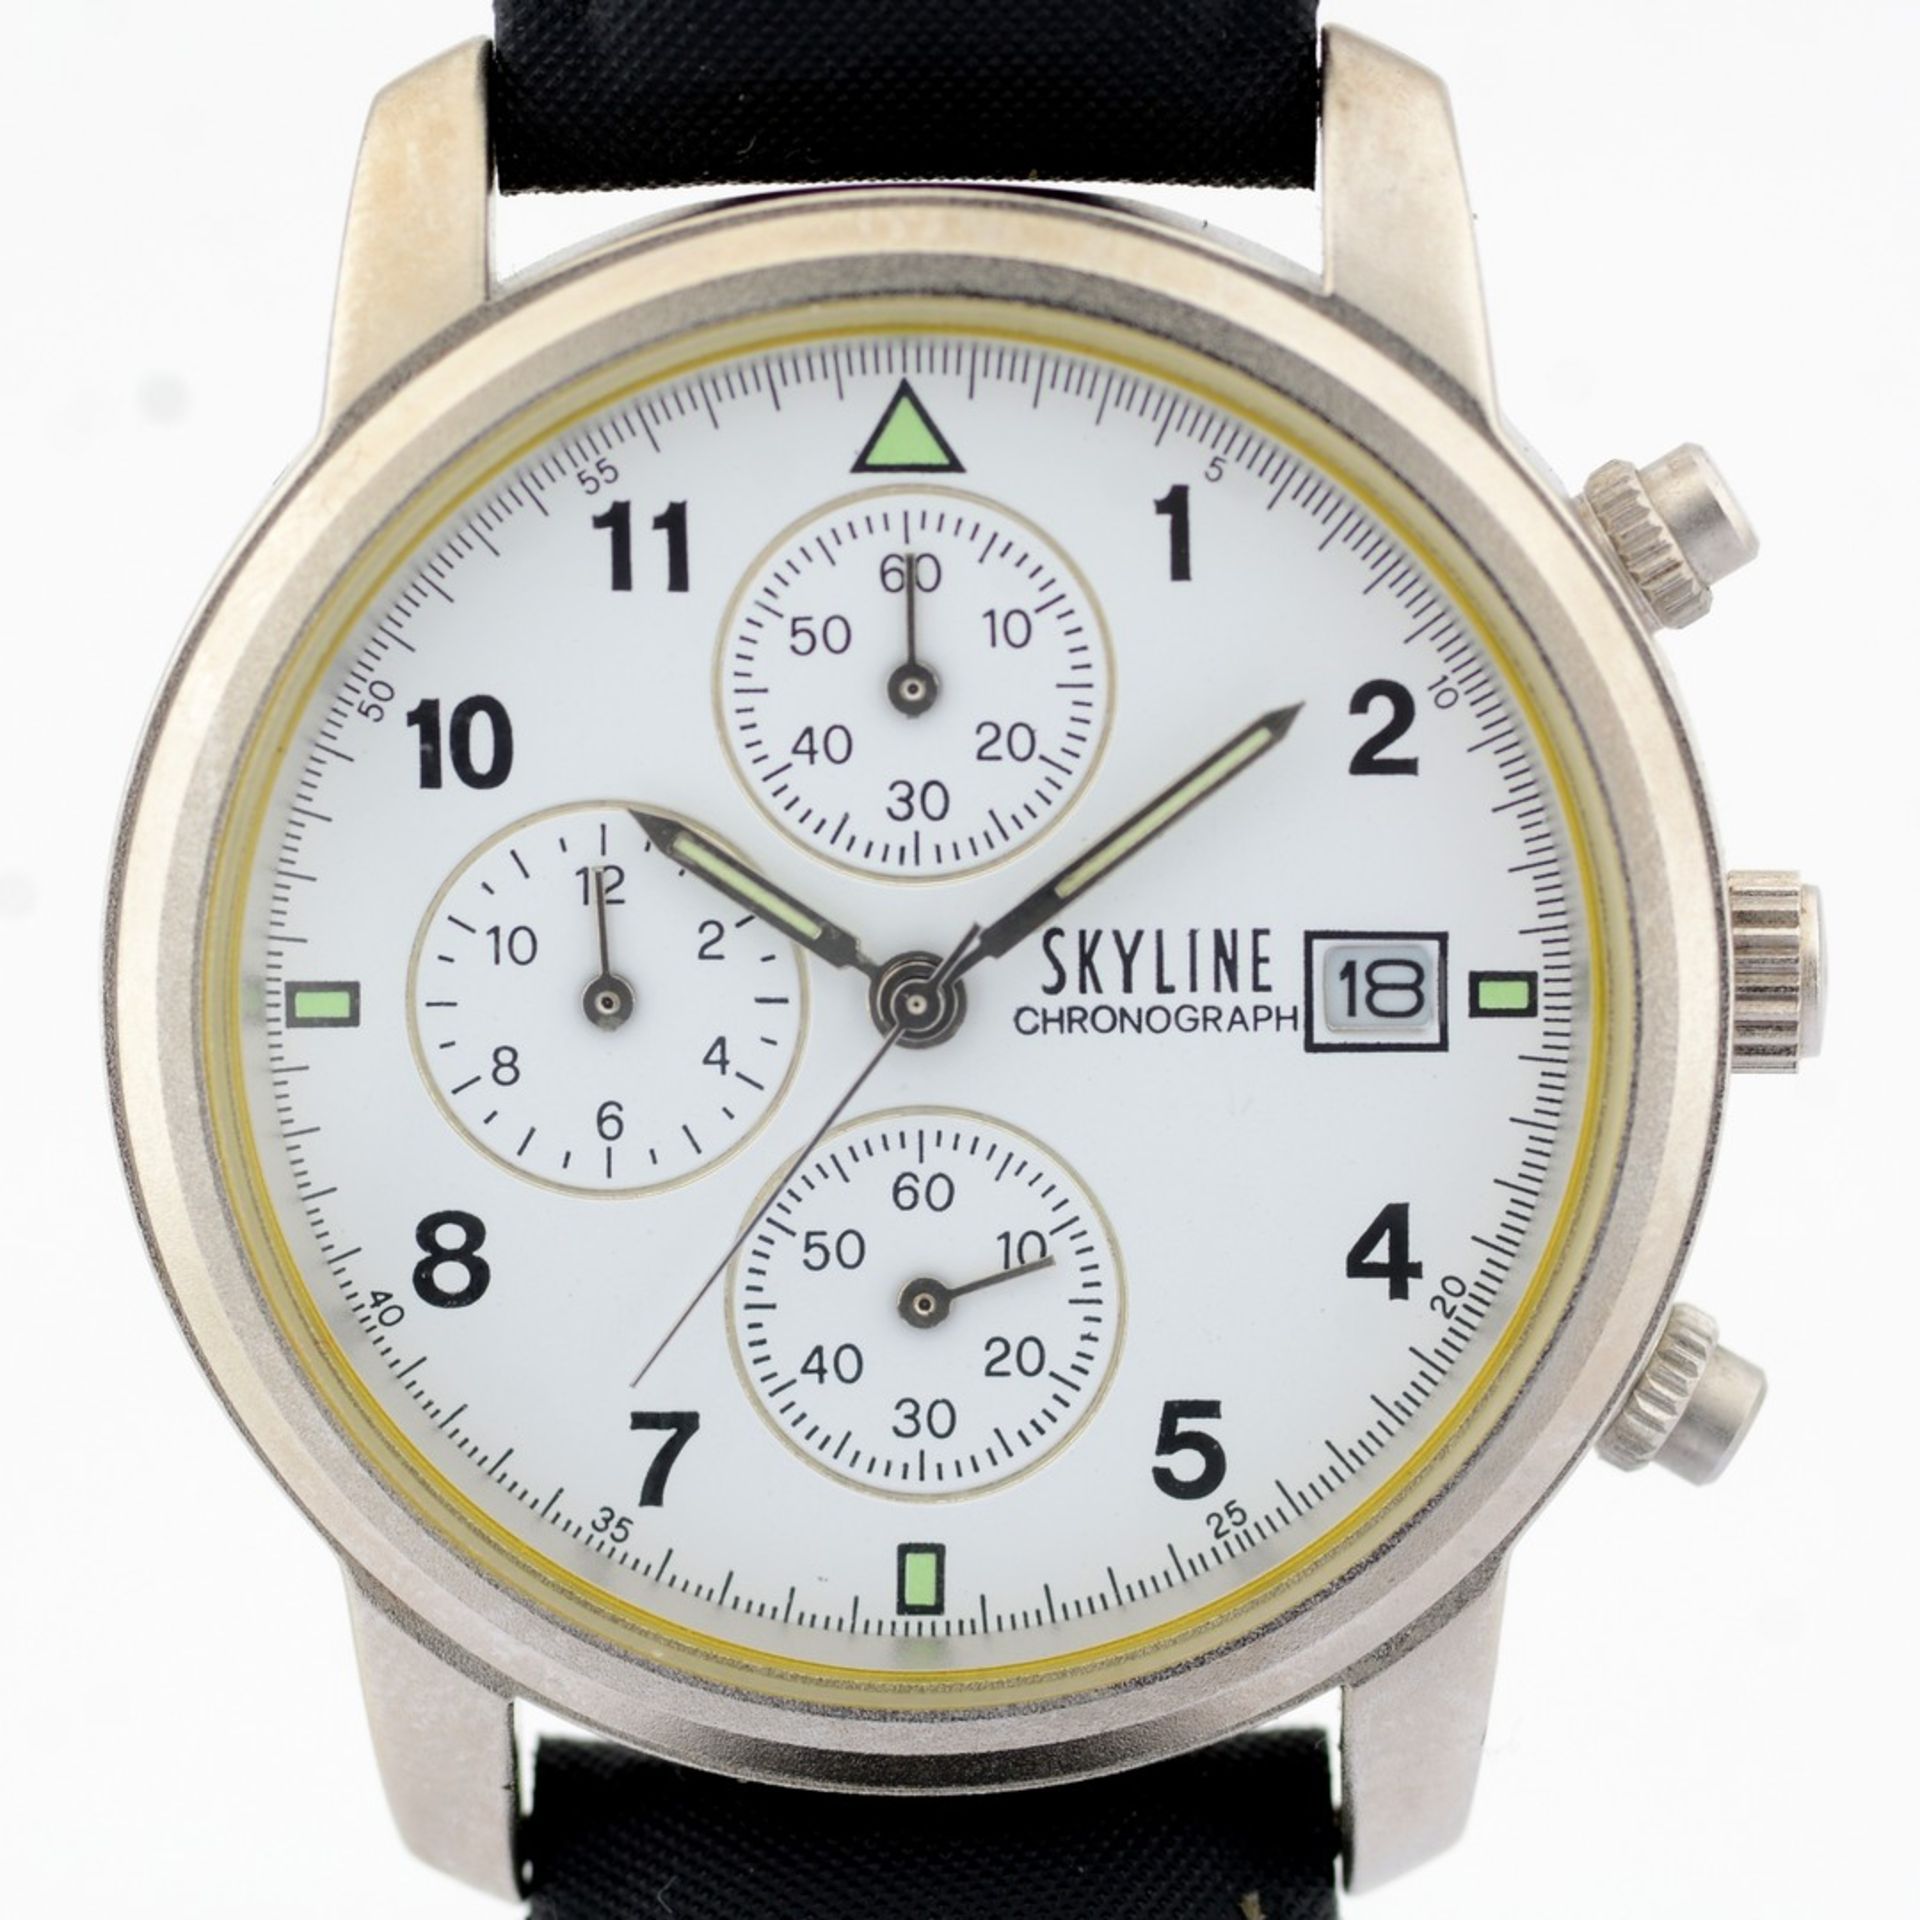 Mondaine / SKYLINE Chronograph Date - (Unworn) Gentlmen's Steel Wrist Watch